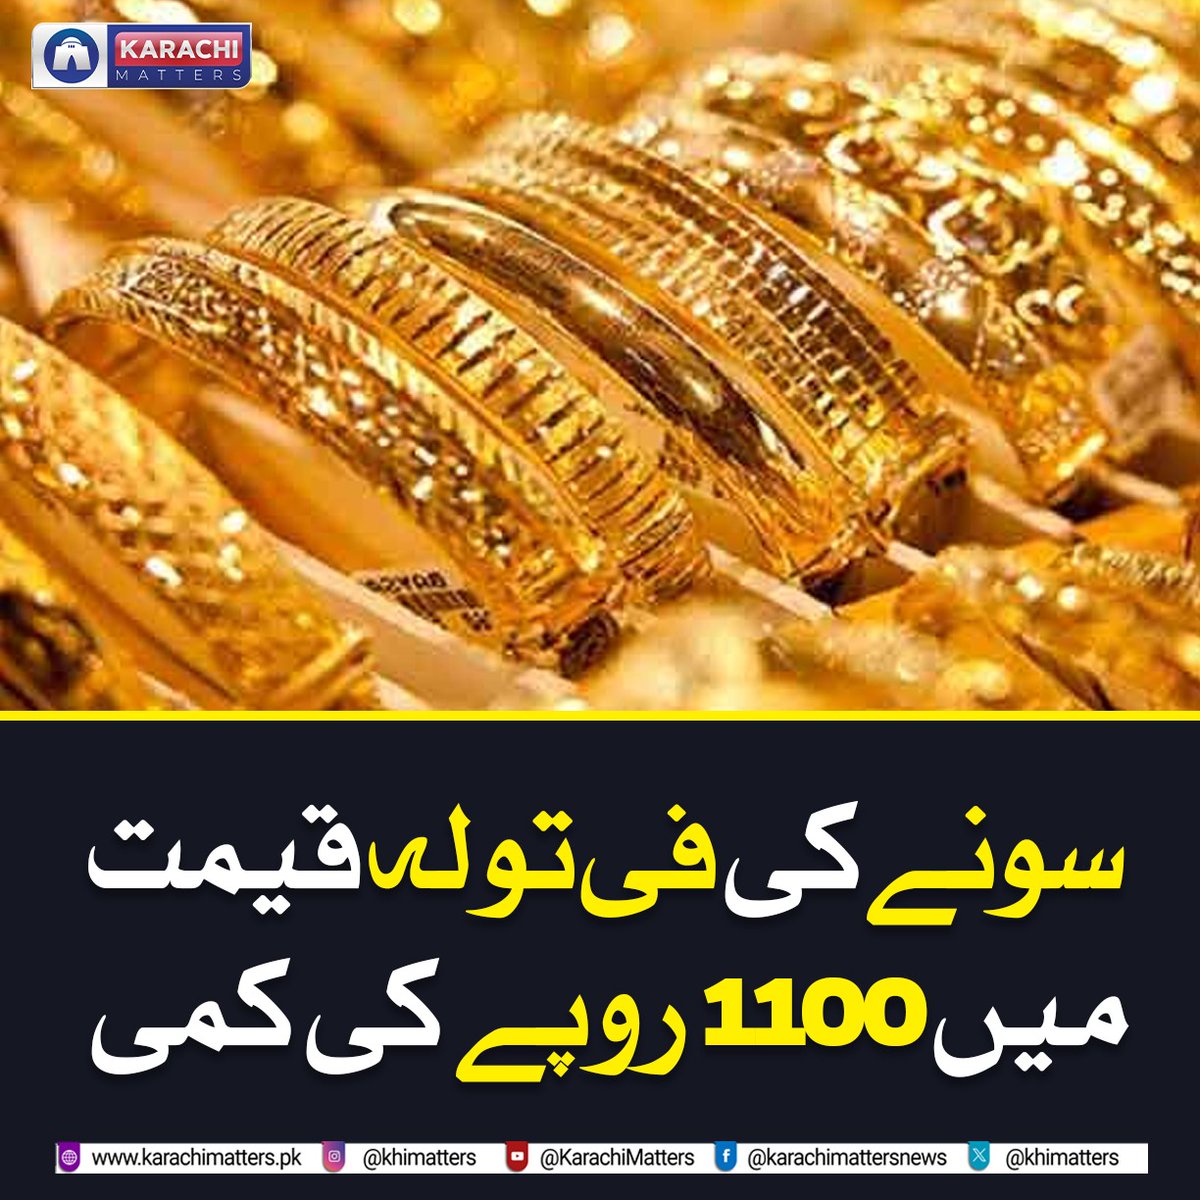 ملک میں سونے کی فی تولہ قیمت میں 1100روپے کی کمی ہوئی ہے۔
1100 روپے کمی کے بعد ملک میں سونے کی فی تولہ قیمت 2 لاکھ 14ہزار800 روپے ہے۔
#Pakistan #goldjewelry #jewellery #jewellers #BusinessGoals #prices #pricehike  #Mining  #karachi #karachimatters